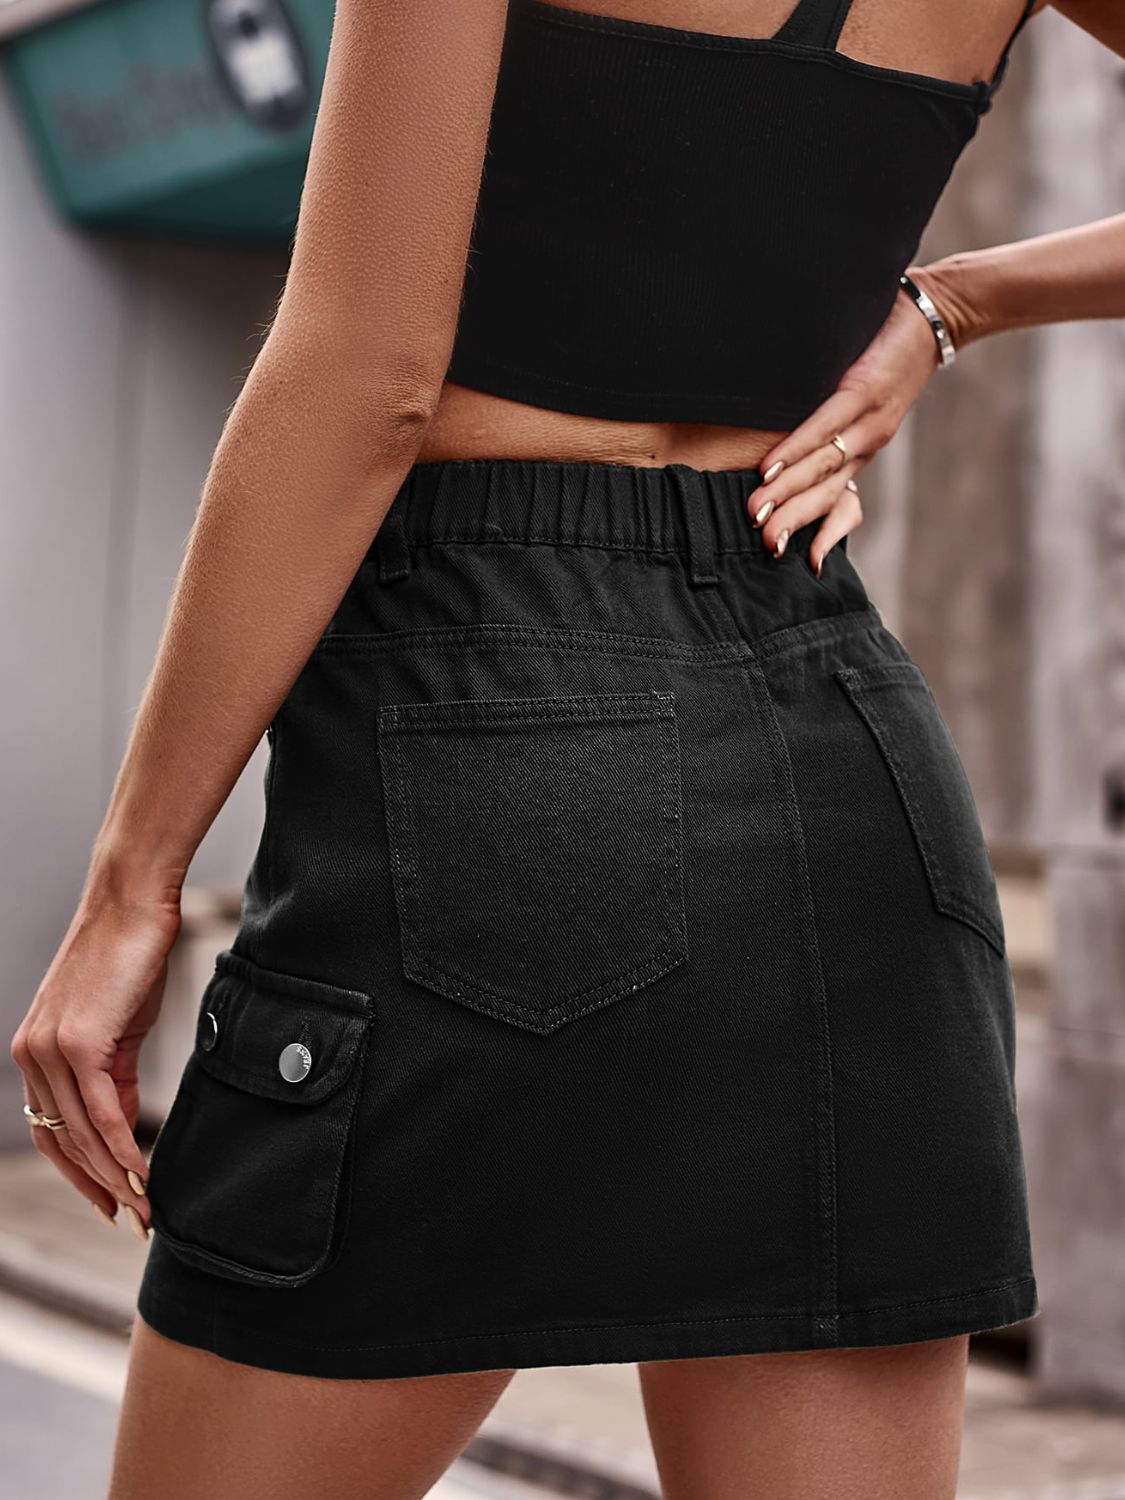 Women's Soft Touch Pull On Denim Skirt in Black | Postie